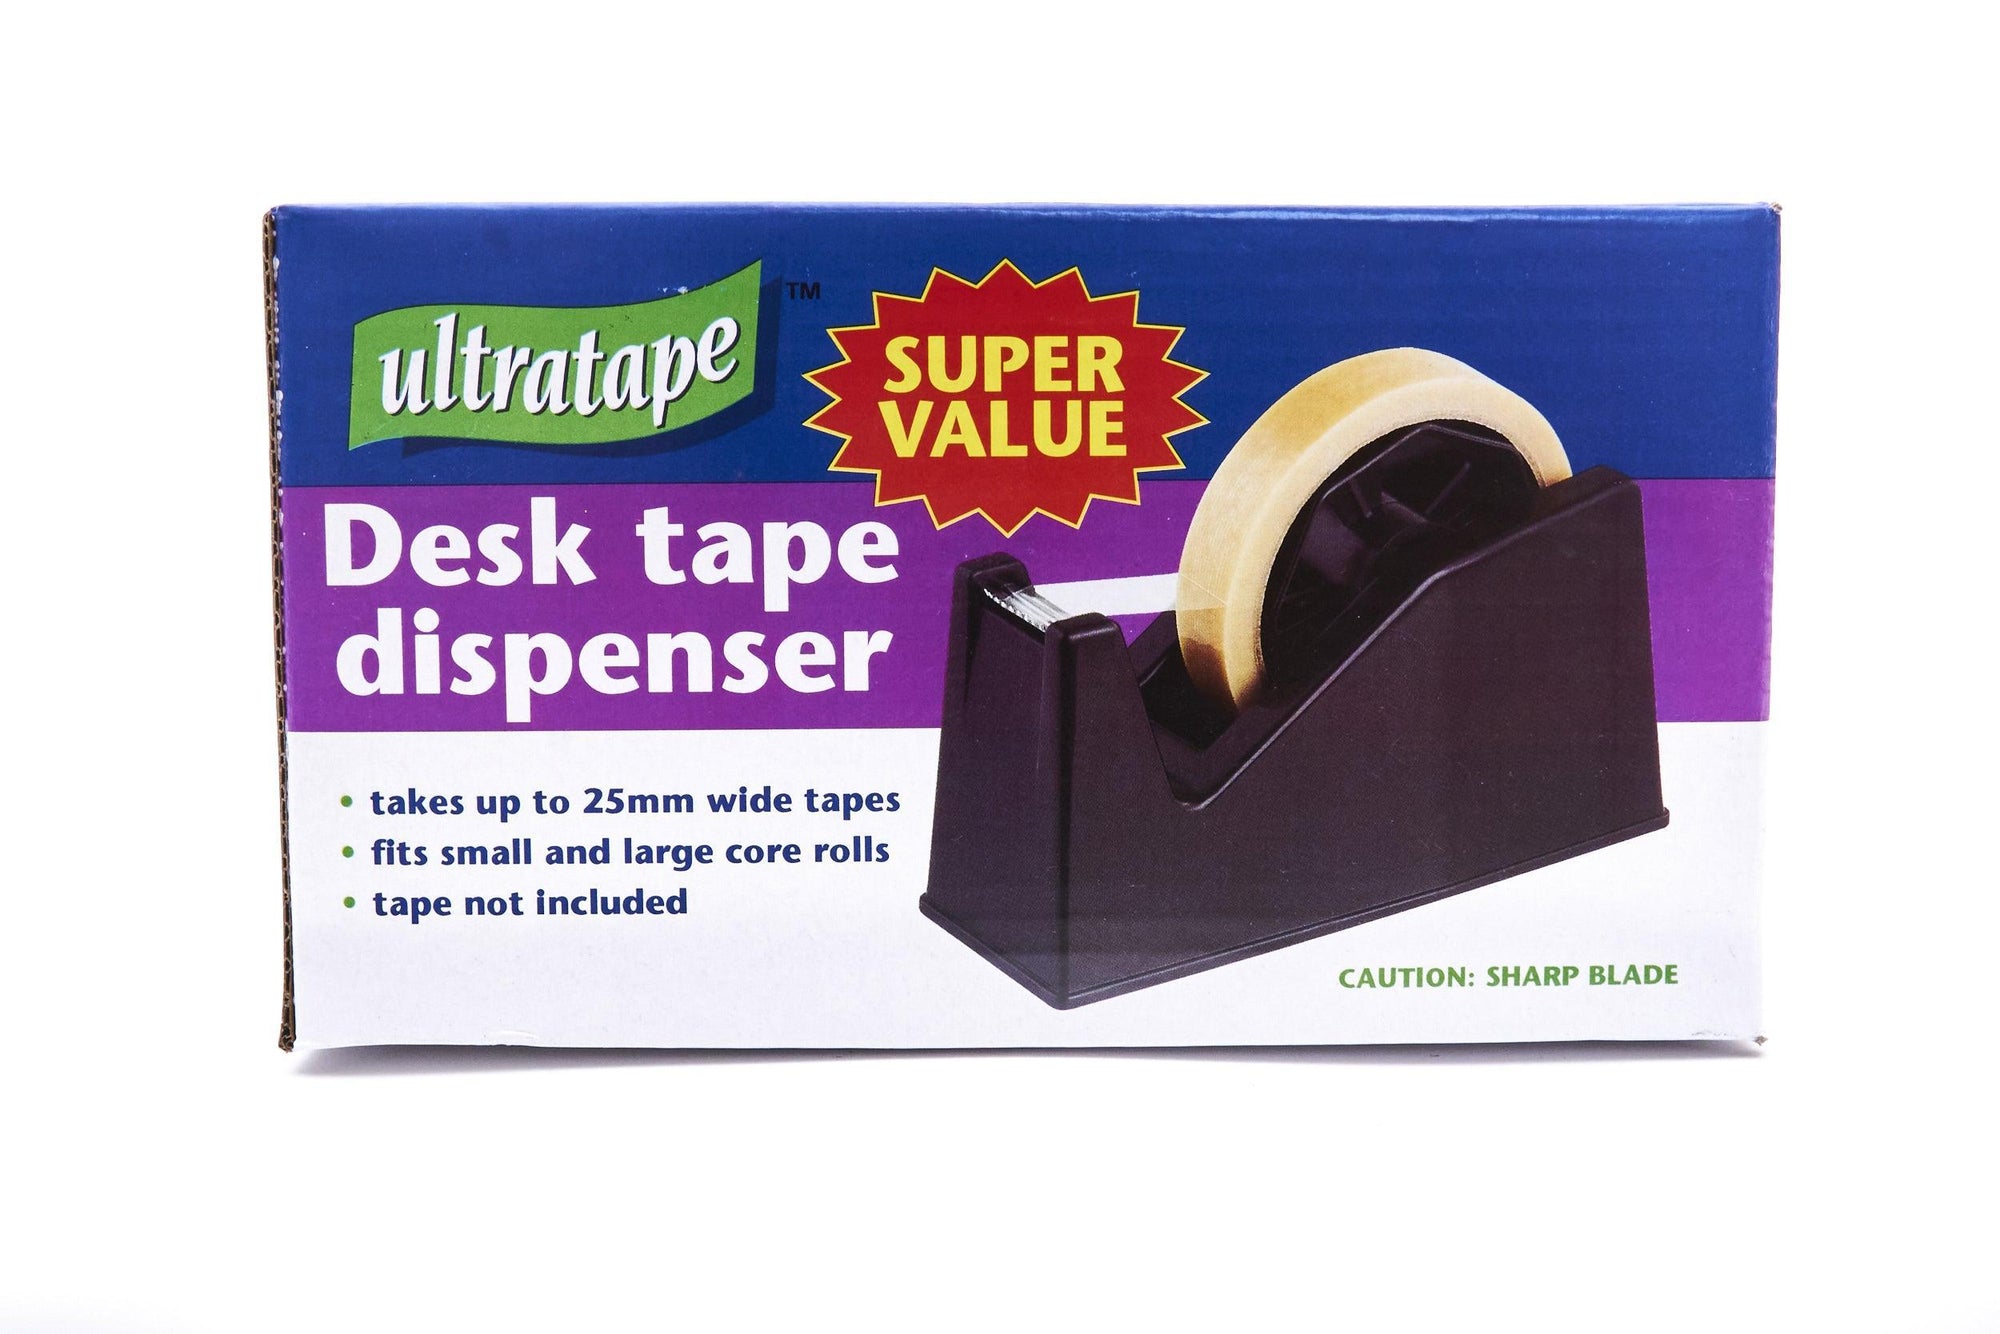 Ultratape Super Value Desk Tape Dispenser - Choice Stores